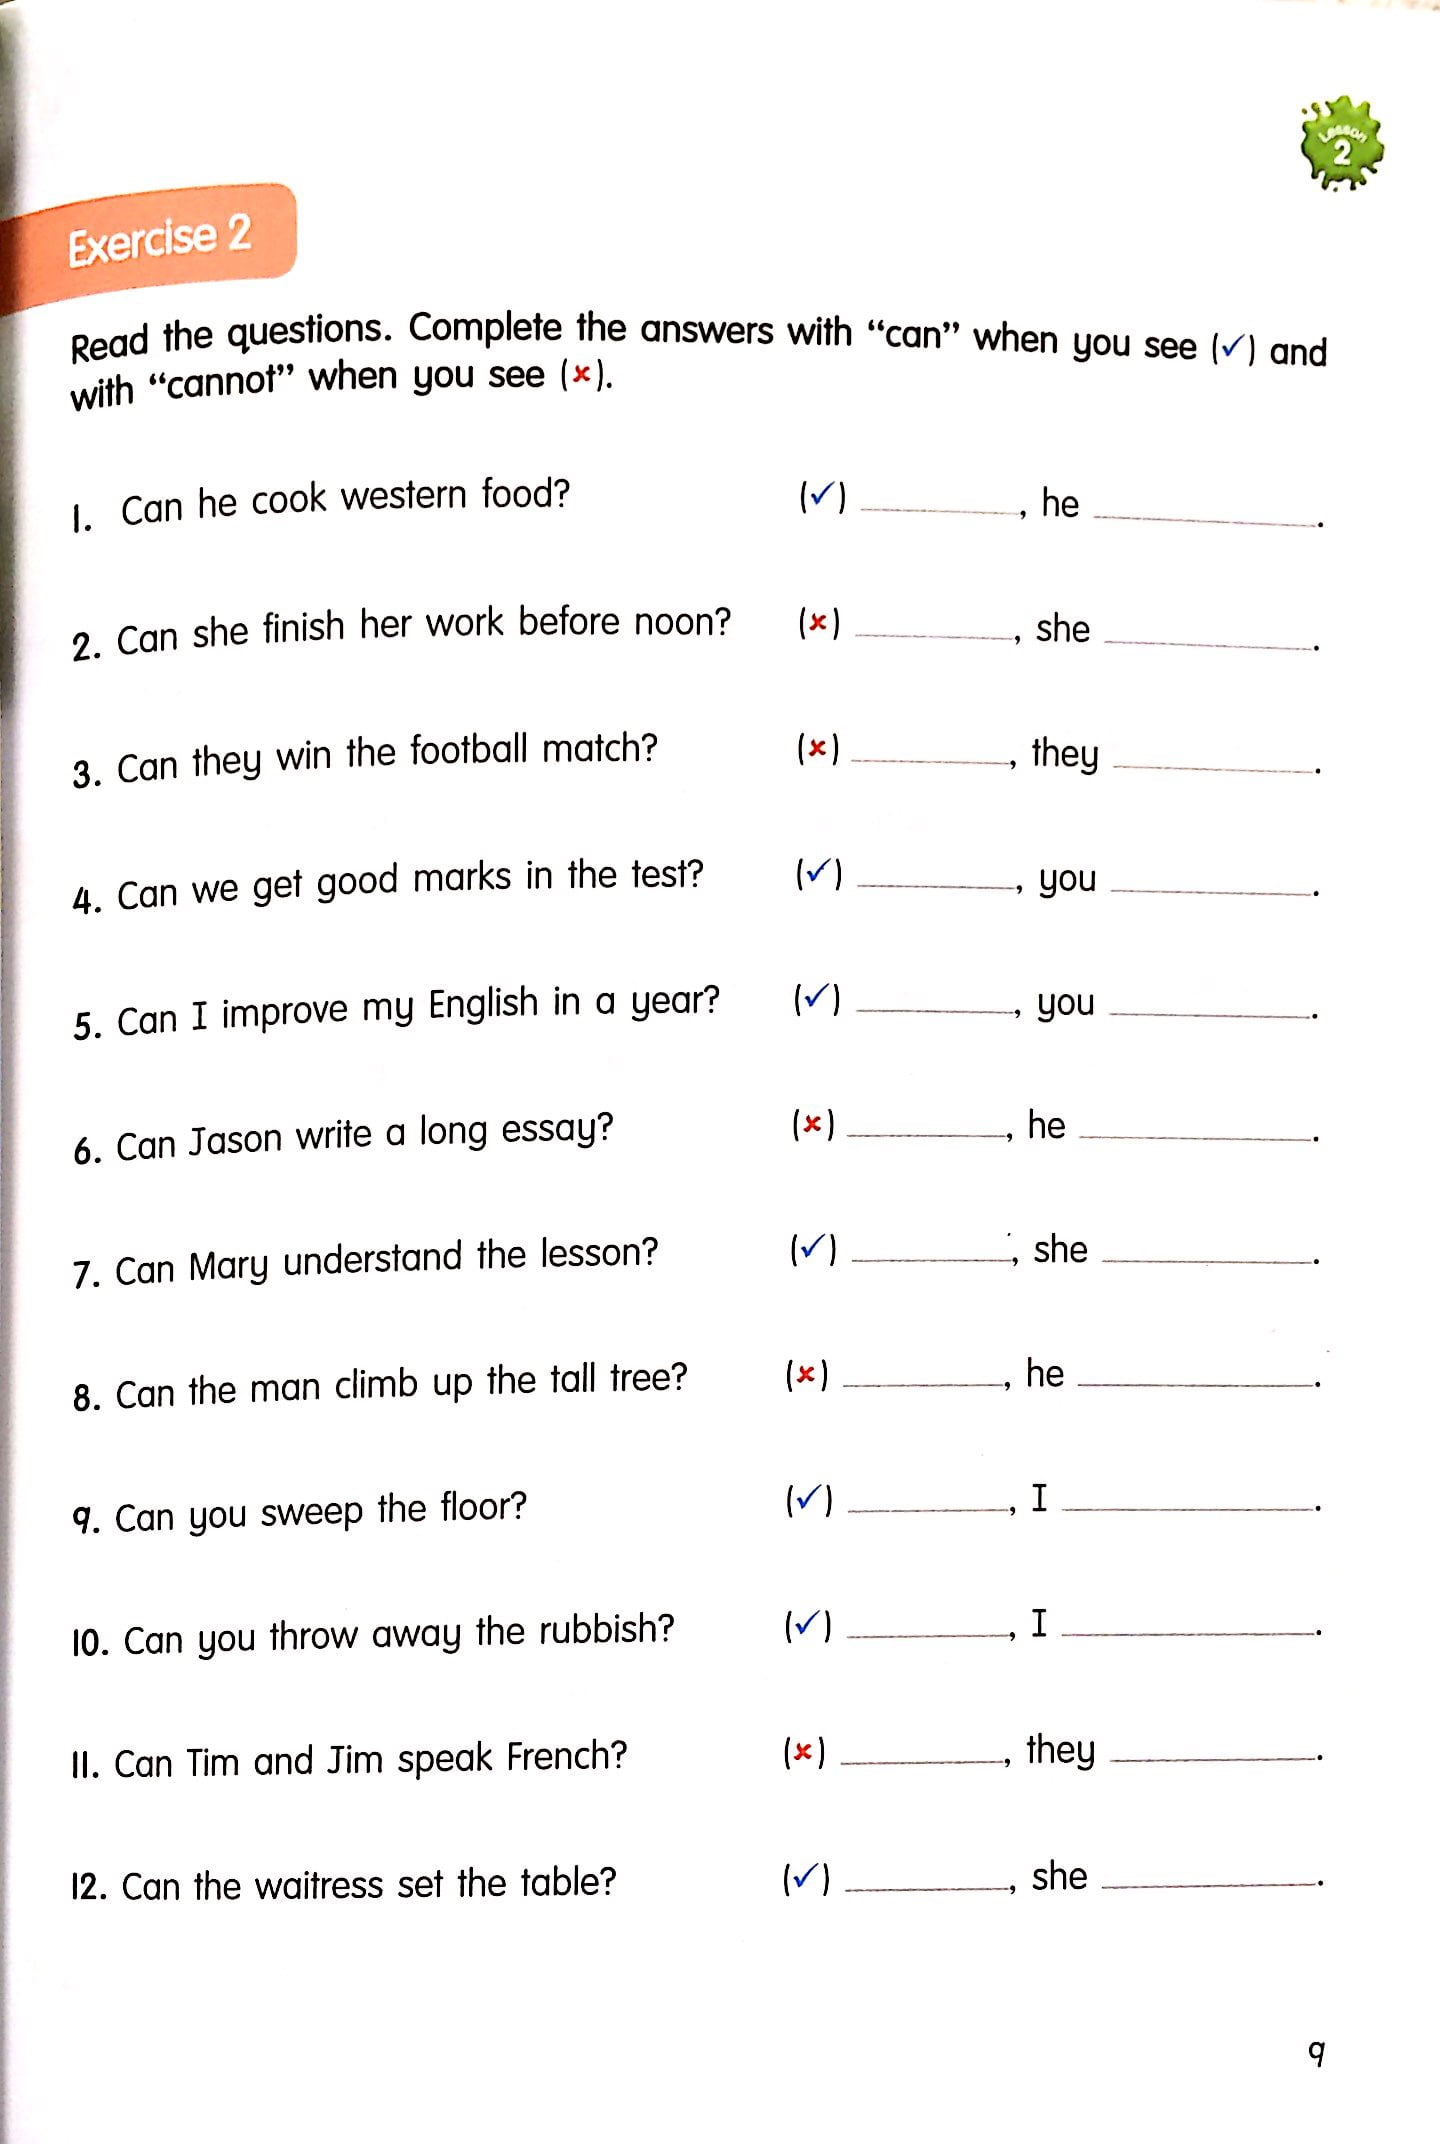 Exploring Grammar Book 3 PDF